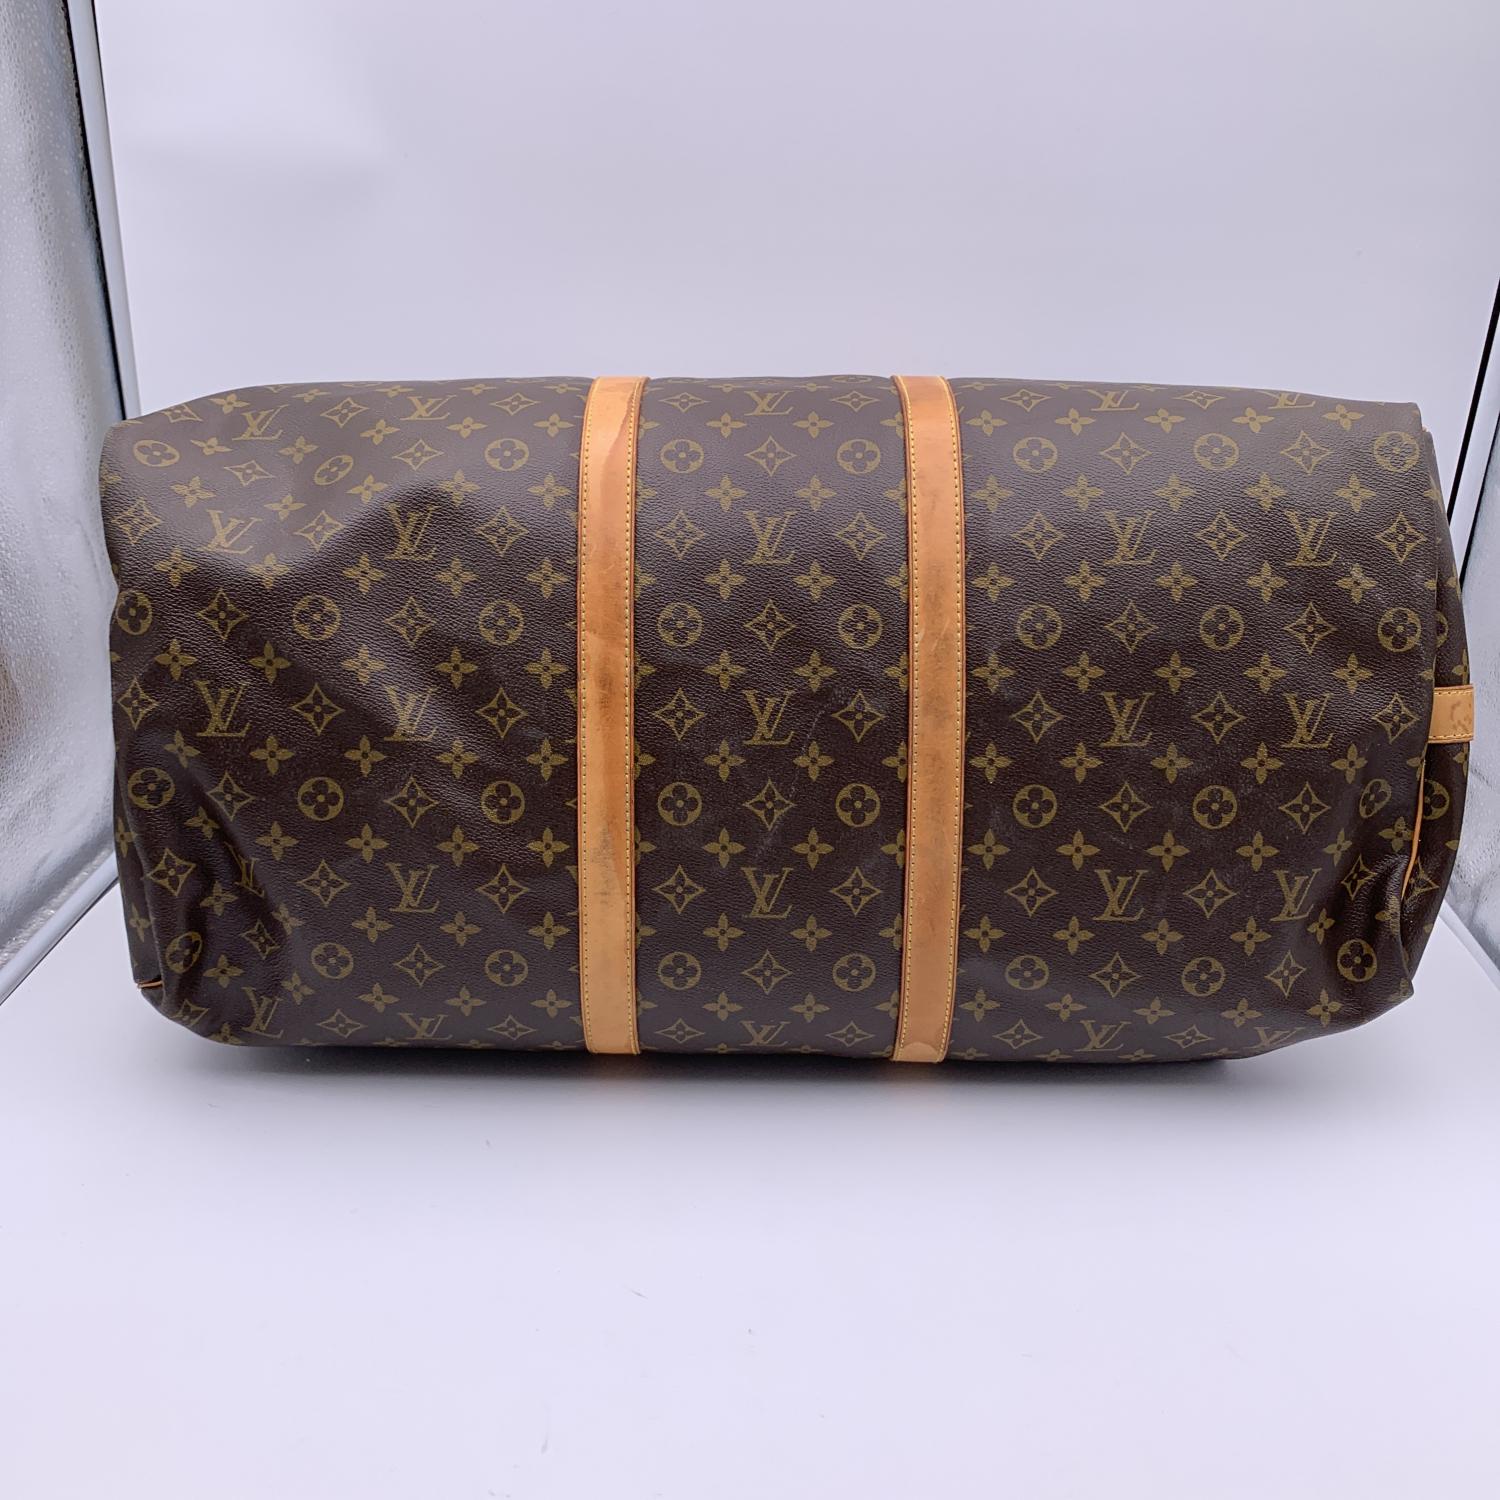 Louis Vuitton Monogram Keepall 60 Travel Large Duffle Bag M41412 2